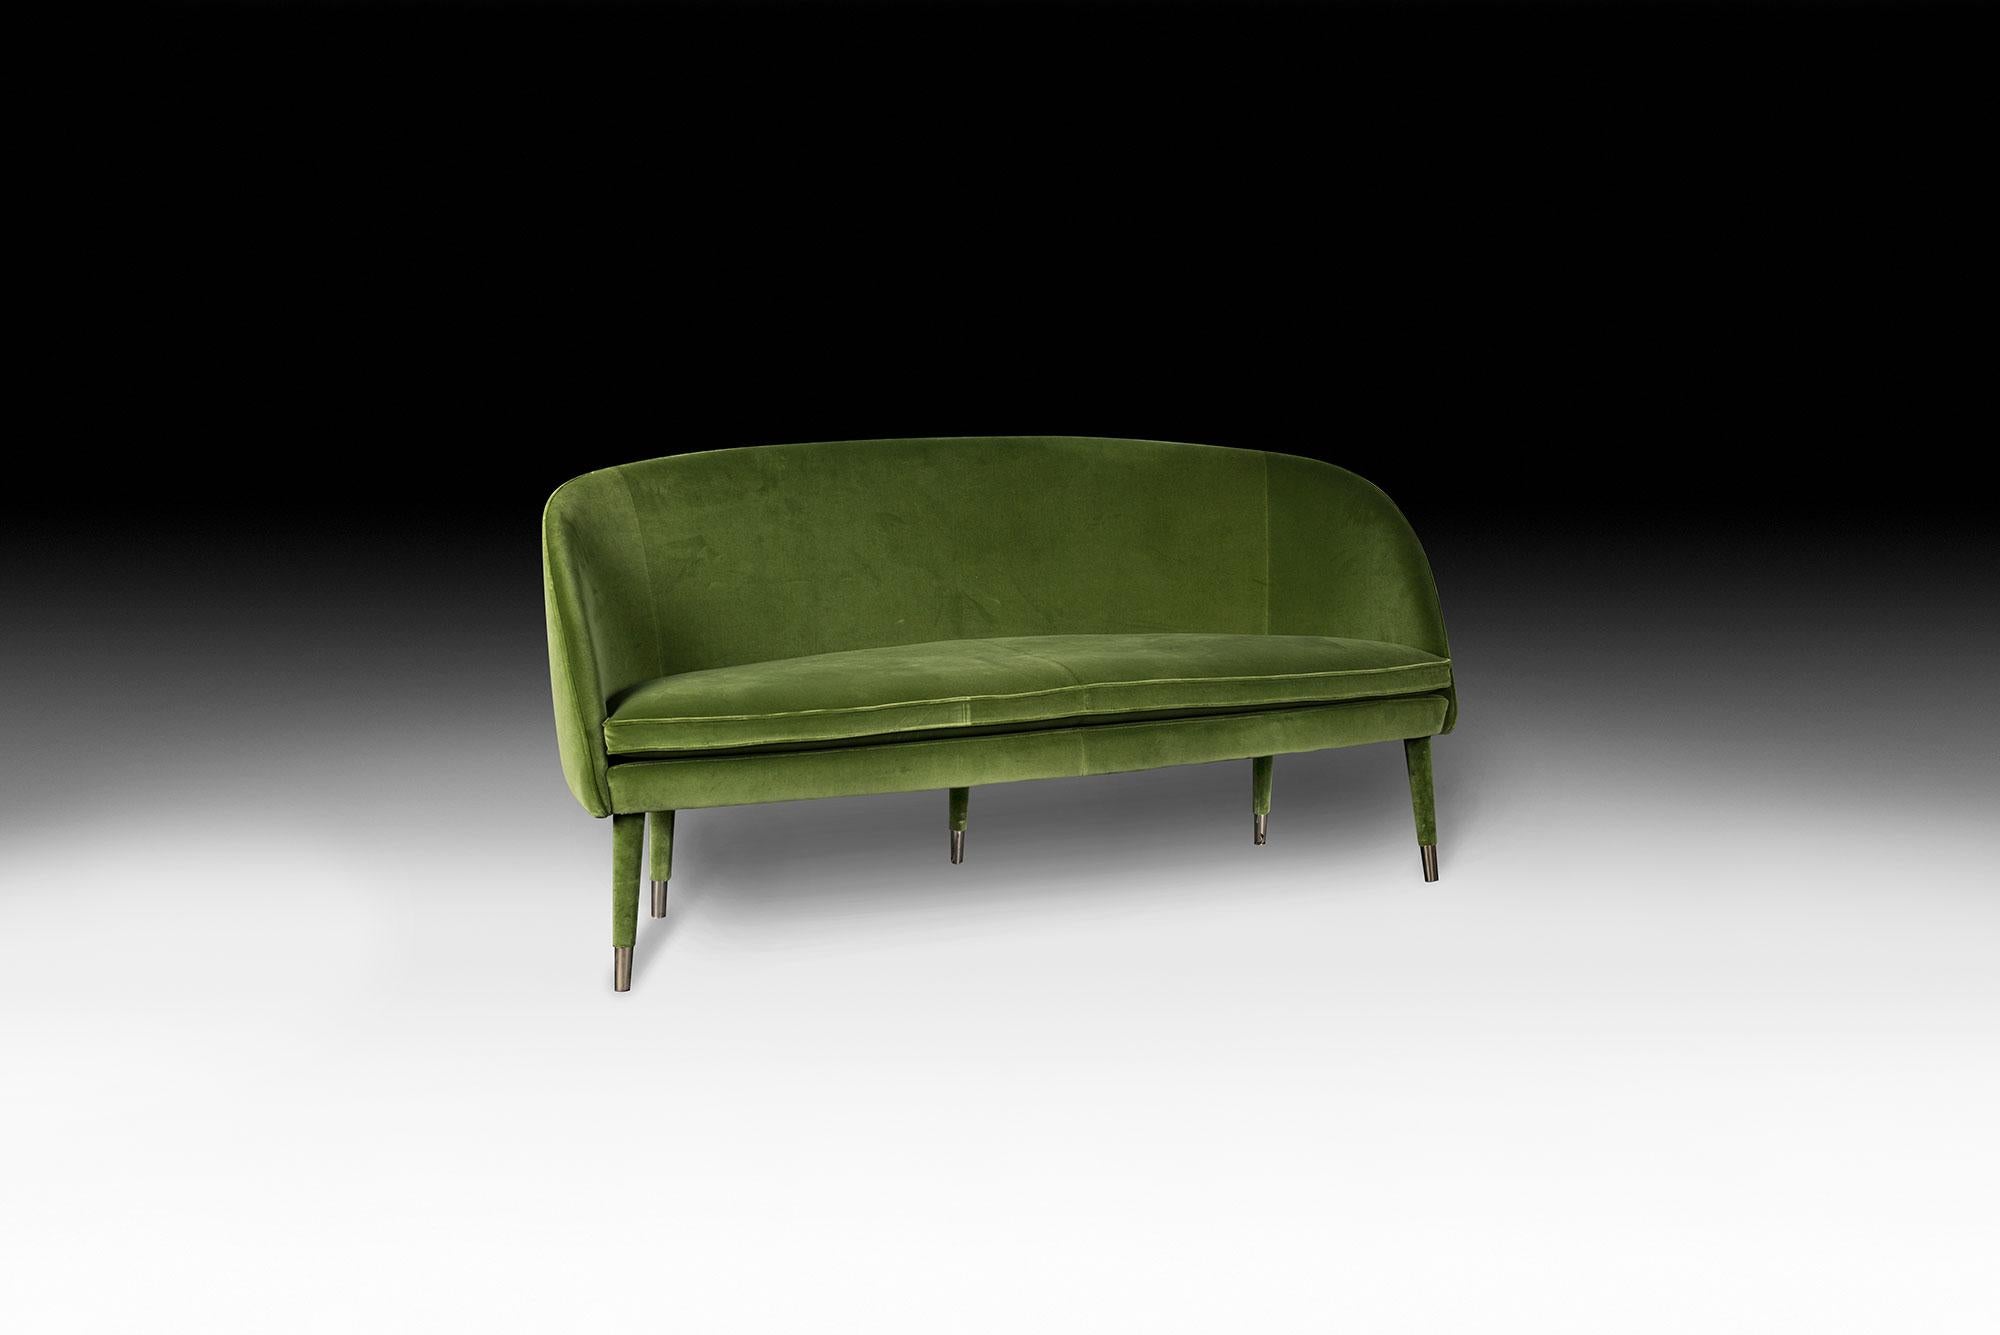 VG-Möbel stehen für Luxus im Sinne von Exklusivität, Auszeichnung und hoher Qualität. Sie sind das Ergebnis von anspruchsvollem und exklusivem Design mit einer starken Identität und sind das Ergebnis einer akribischen Aufmerksamkeit für die